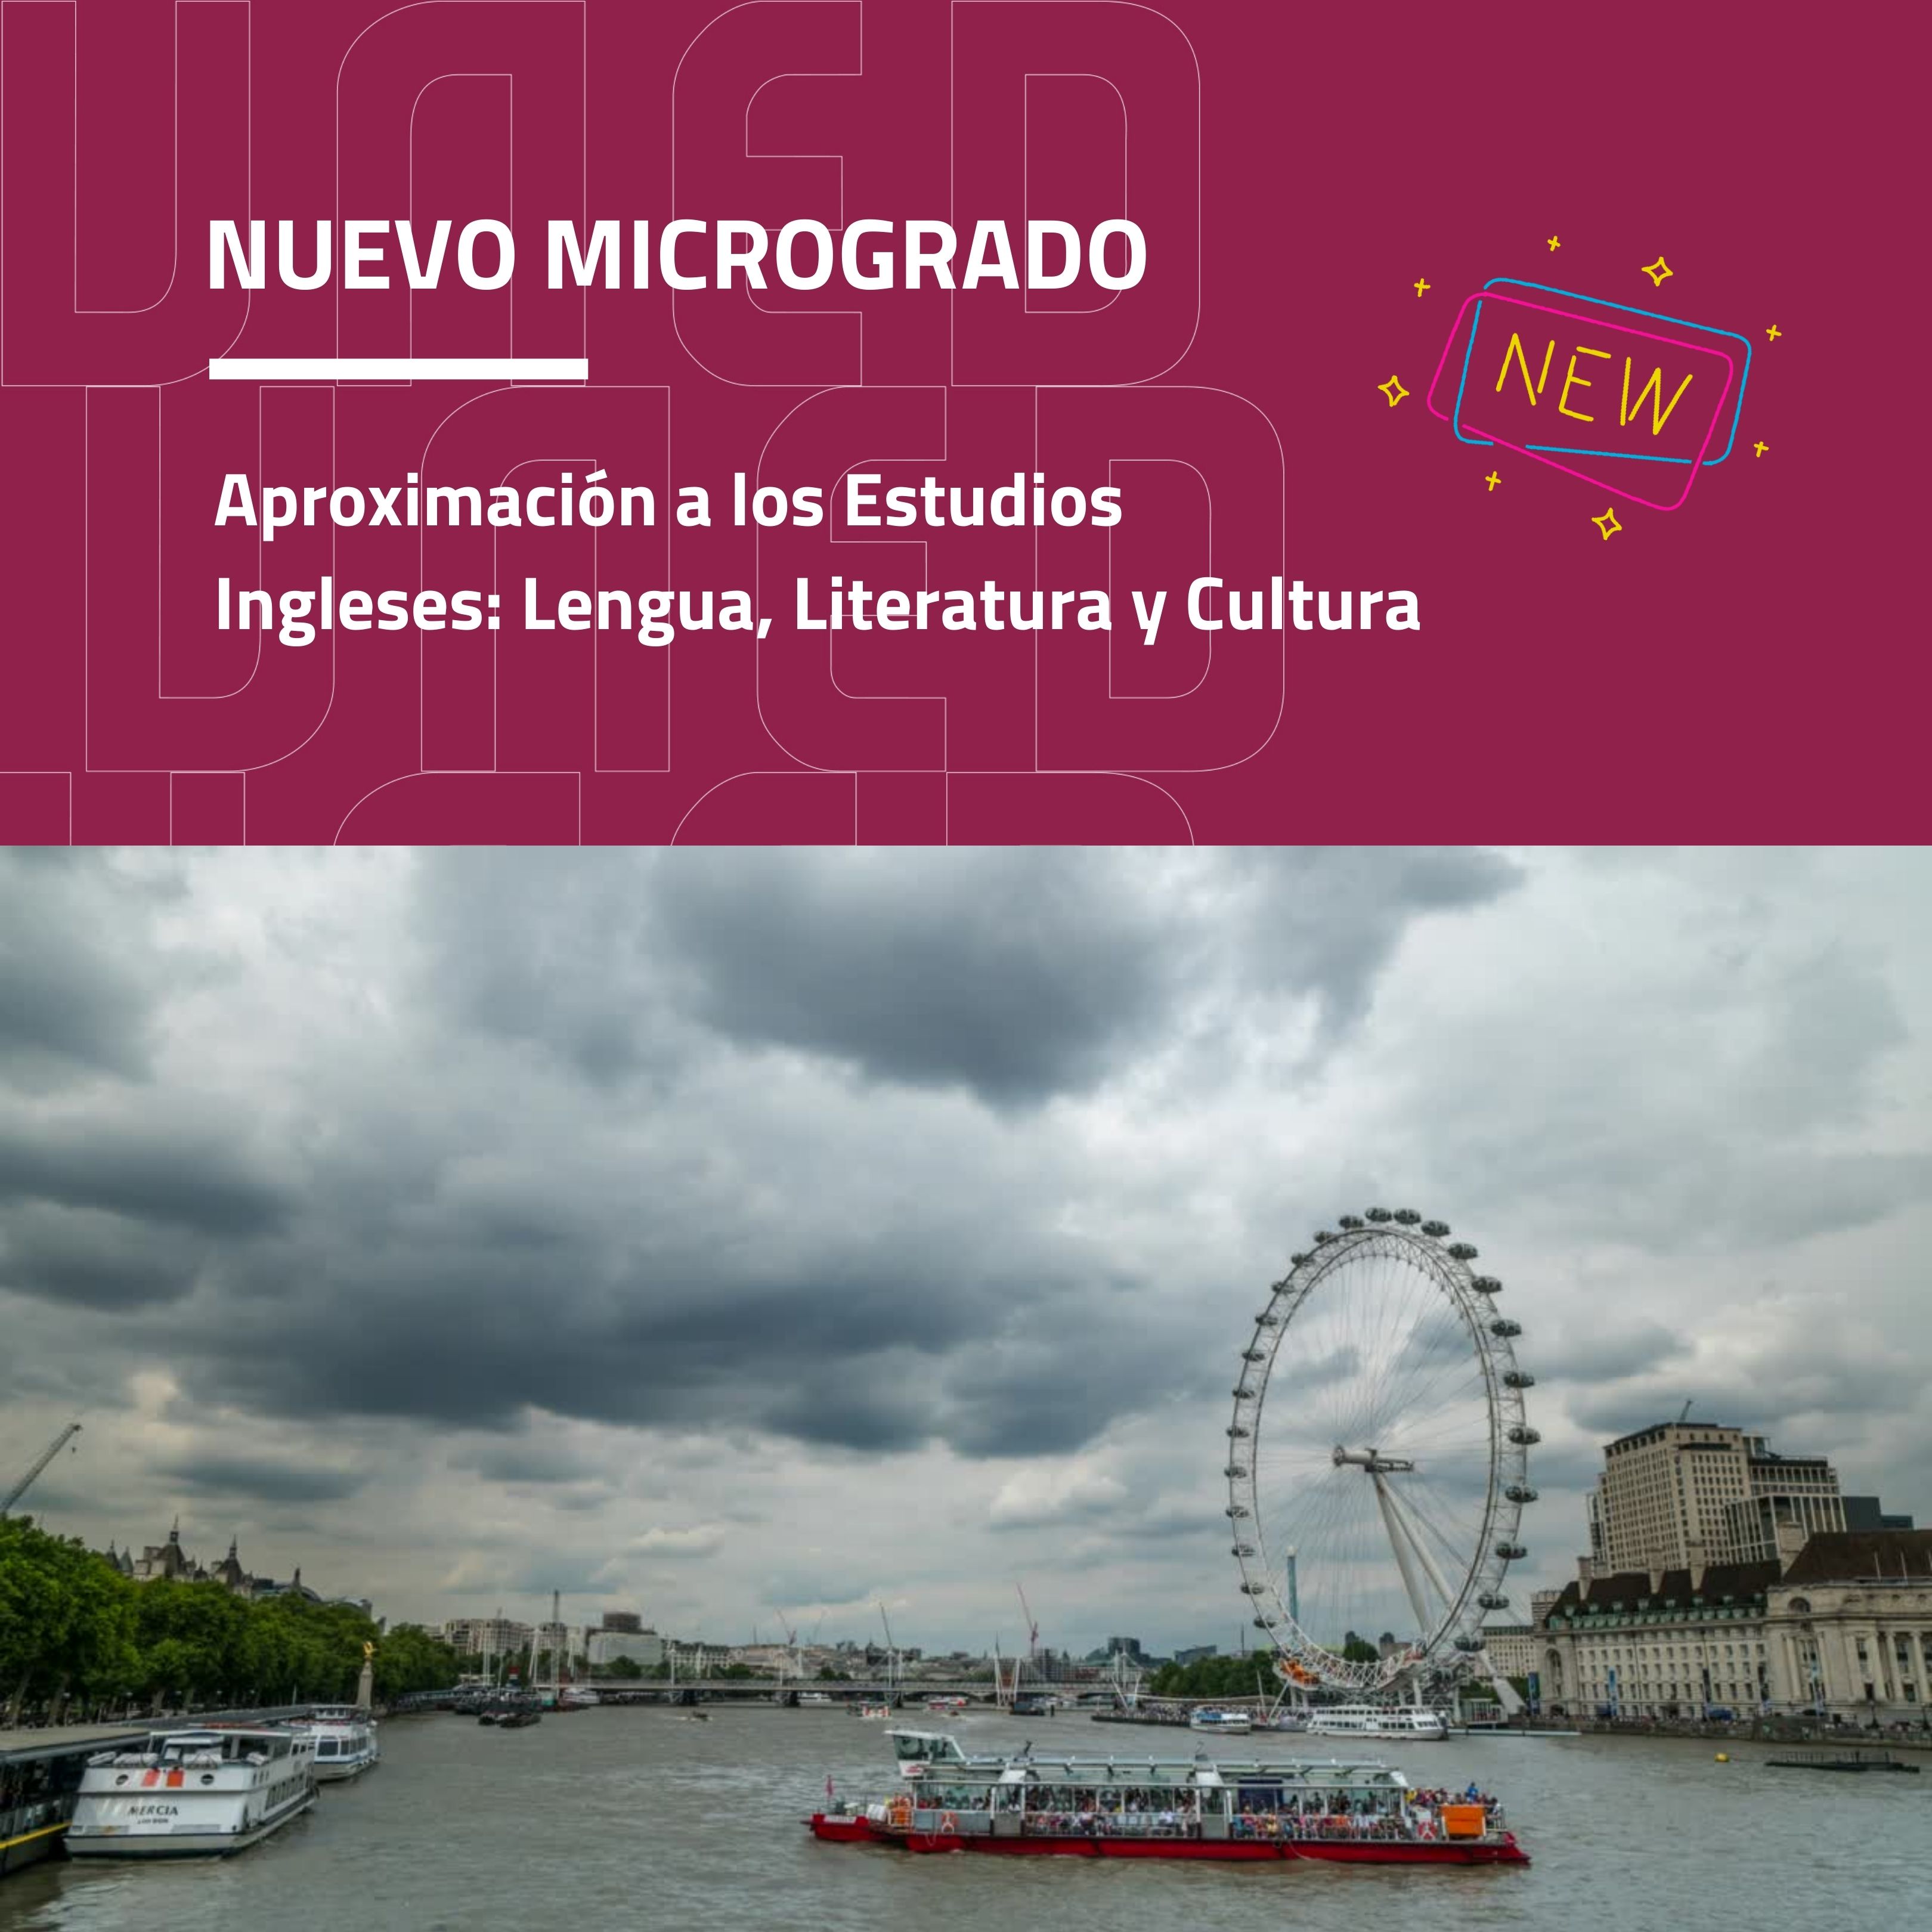 Aproximación a los Estudios Ingleses, nuevo microgrado en la UNED